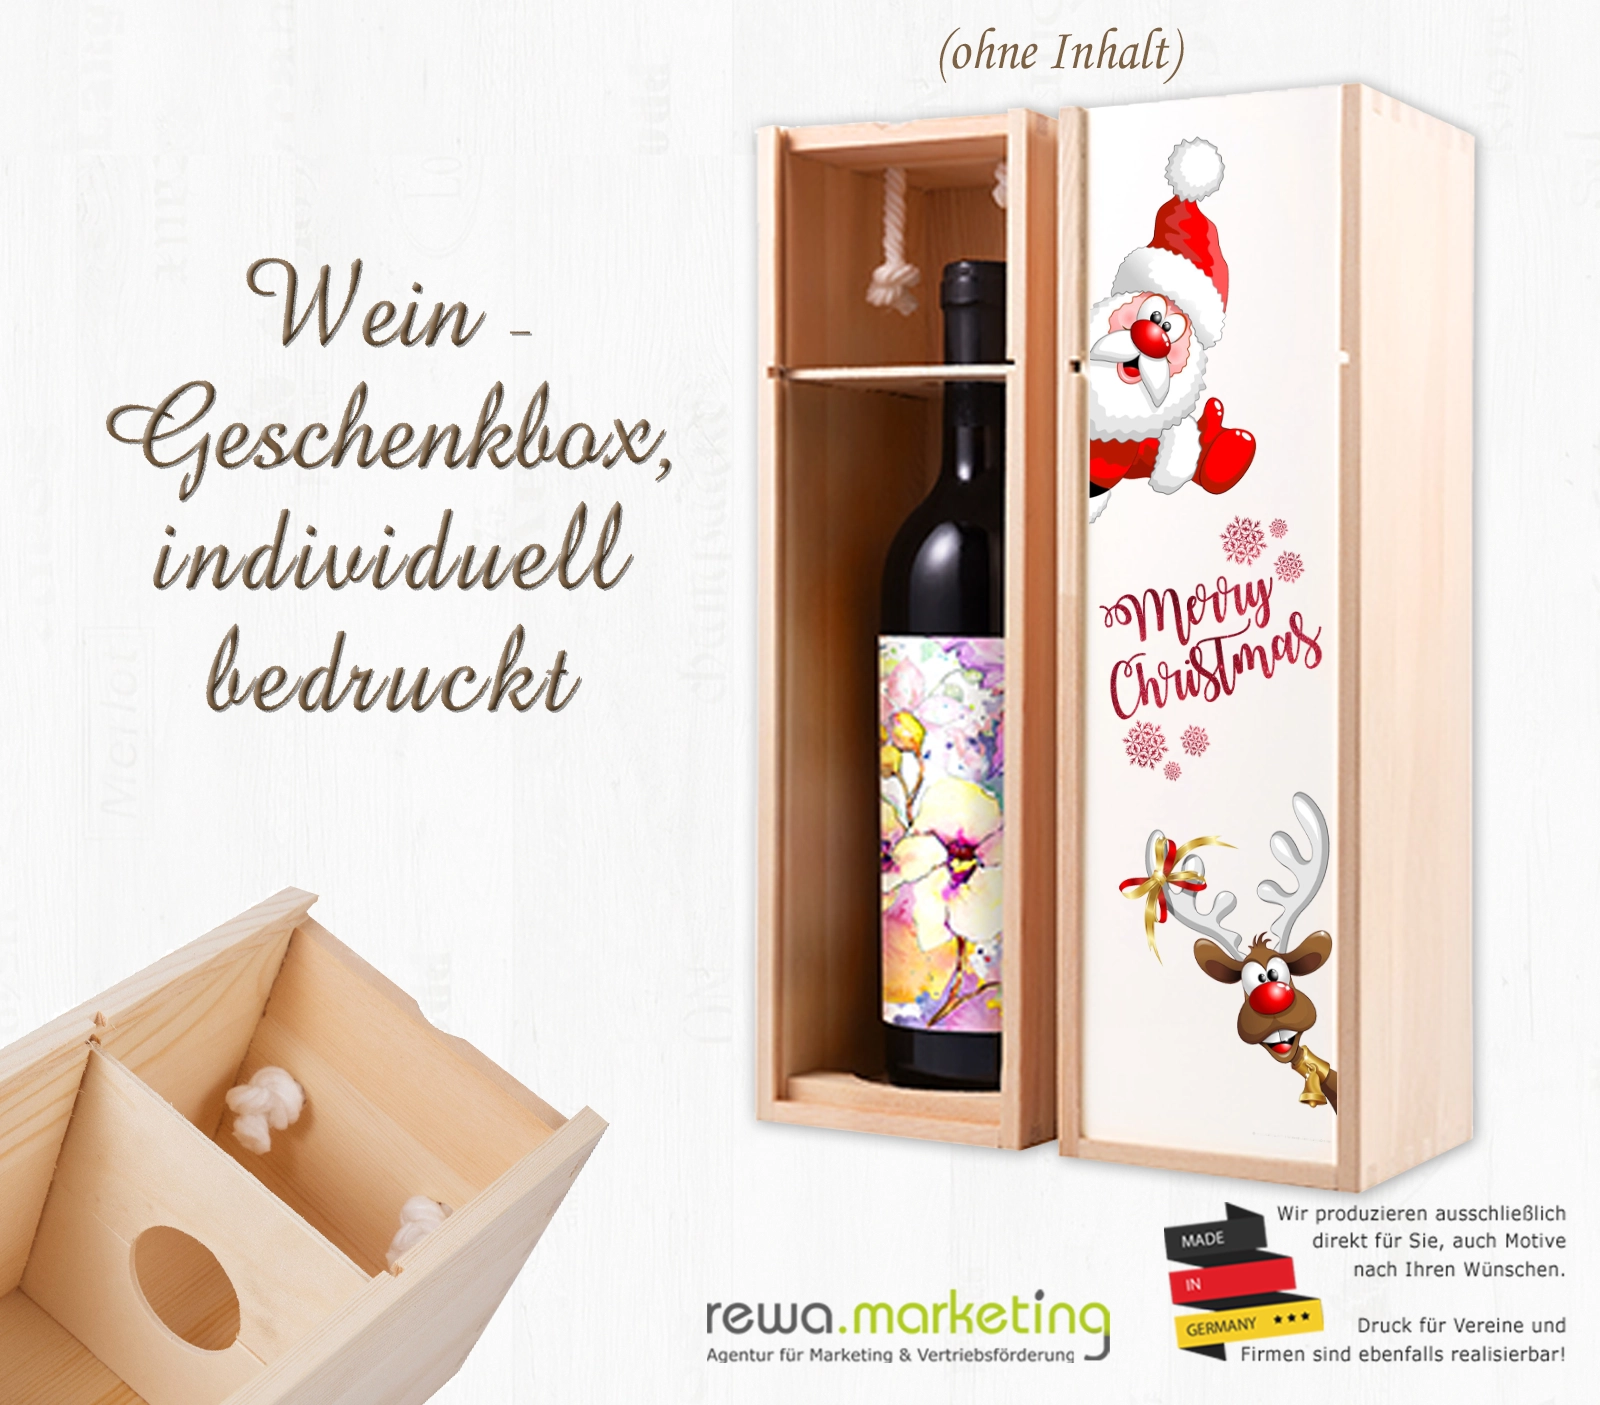 Wein- Flaschenbox aus Holz inkl. Wunschaufdruck